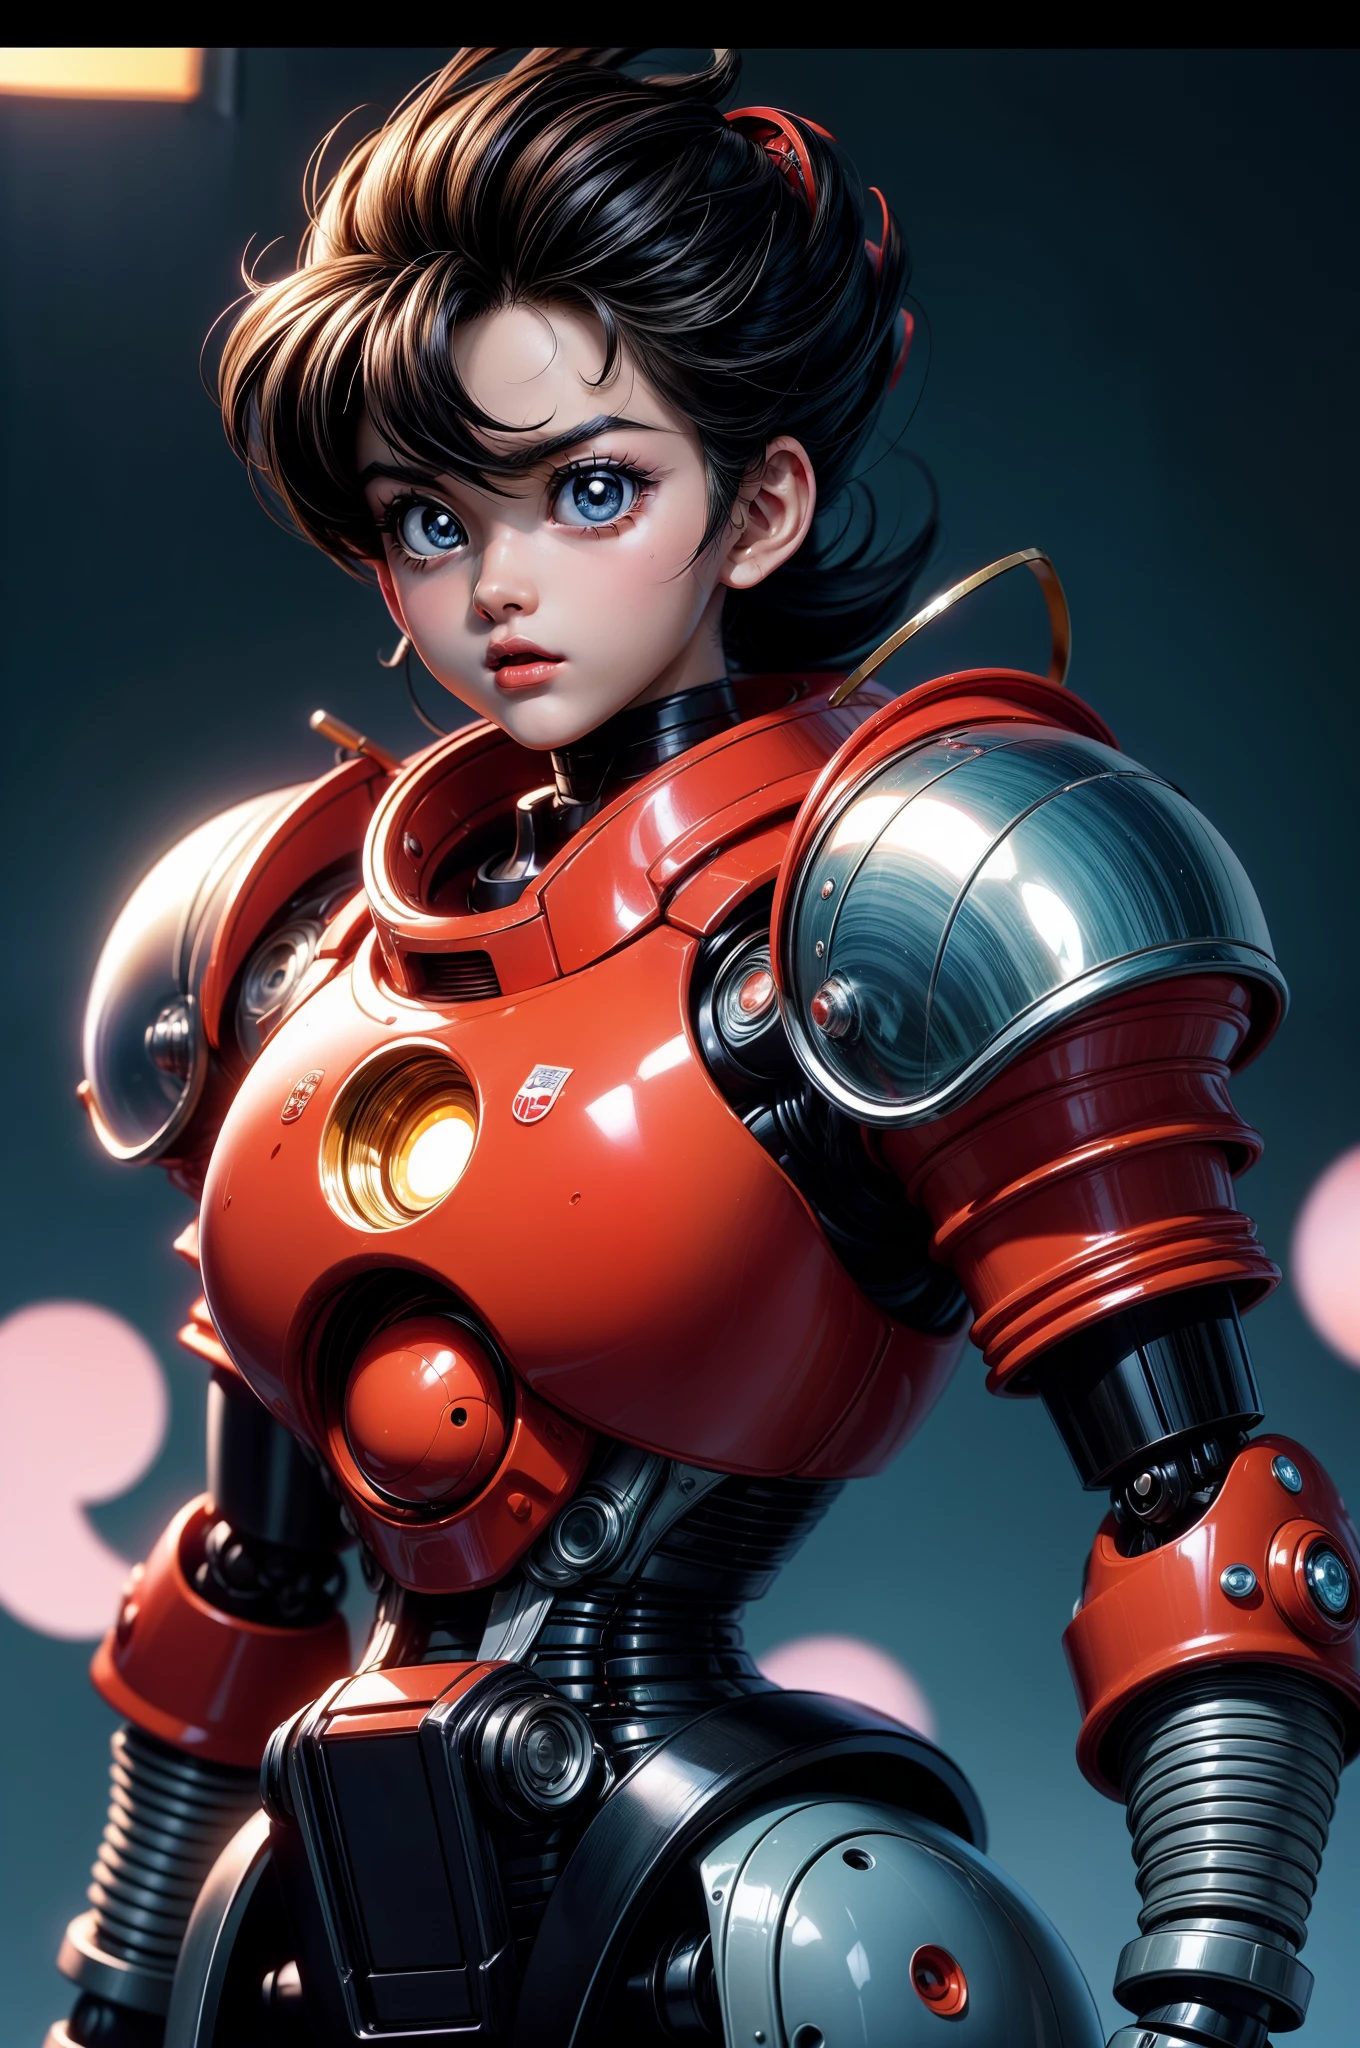 Captura de tela do anime antigo de Akira, Estética de anime dos anos 90. Um robô fofo e útil feito de metal iridescente. 90’s anime.